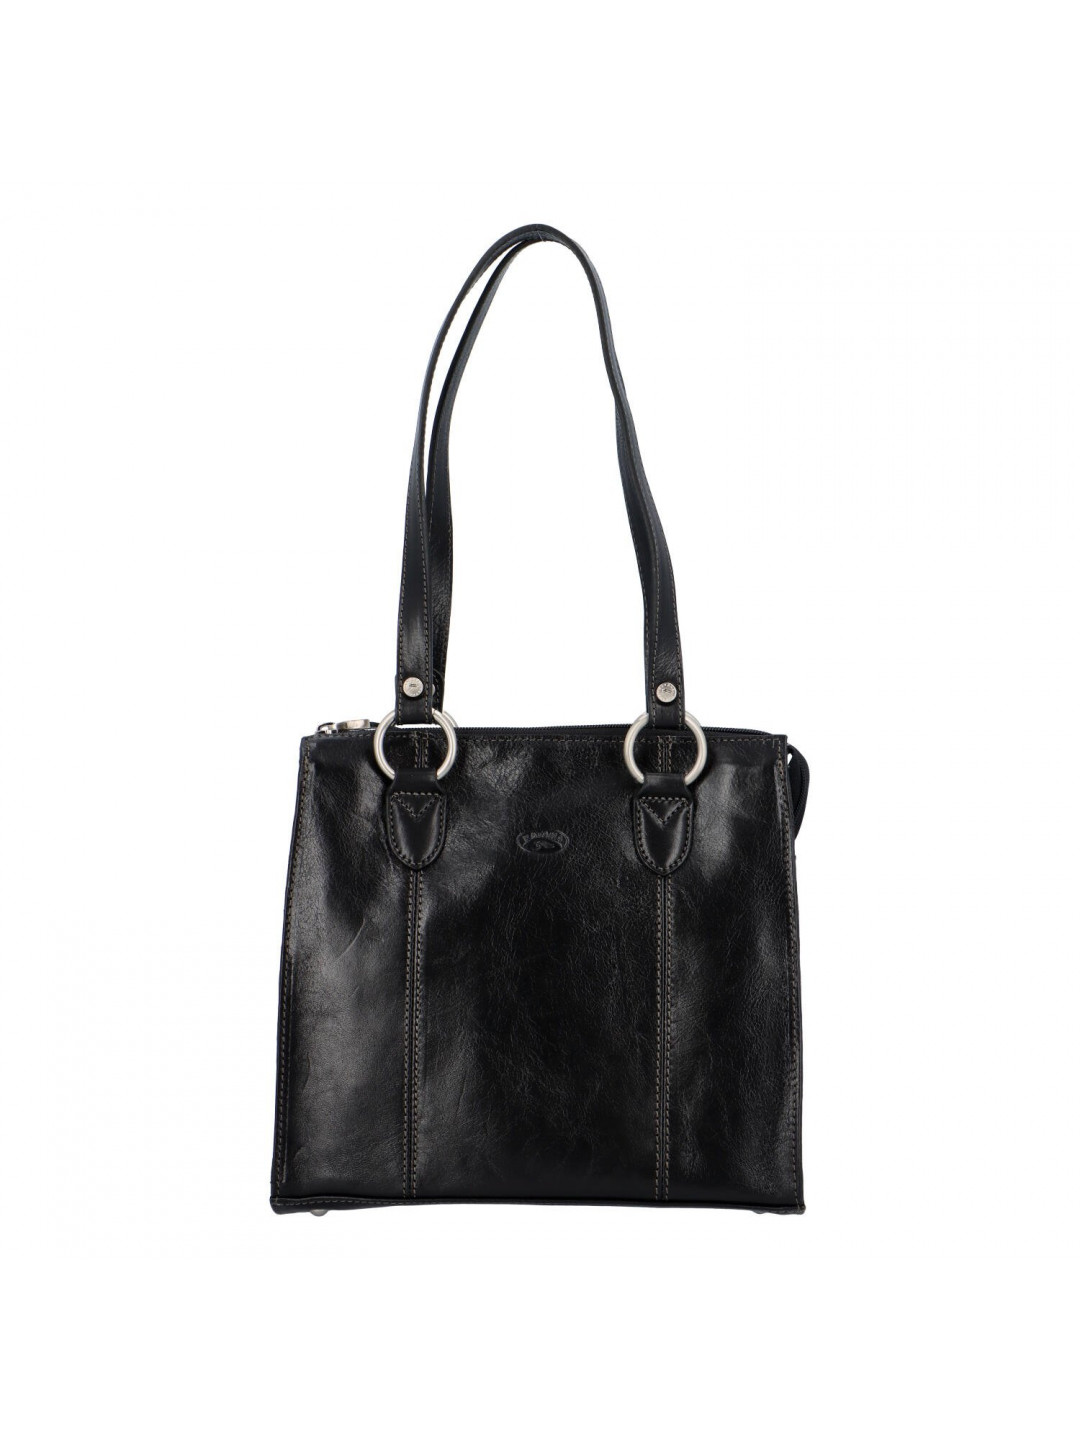 Dámská kožená kabelka přes rameno černá – Katana Lenna